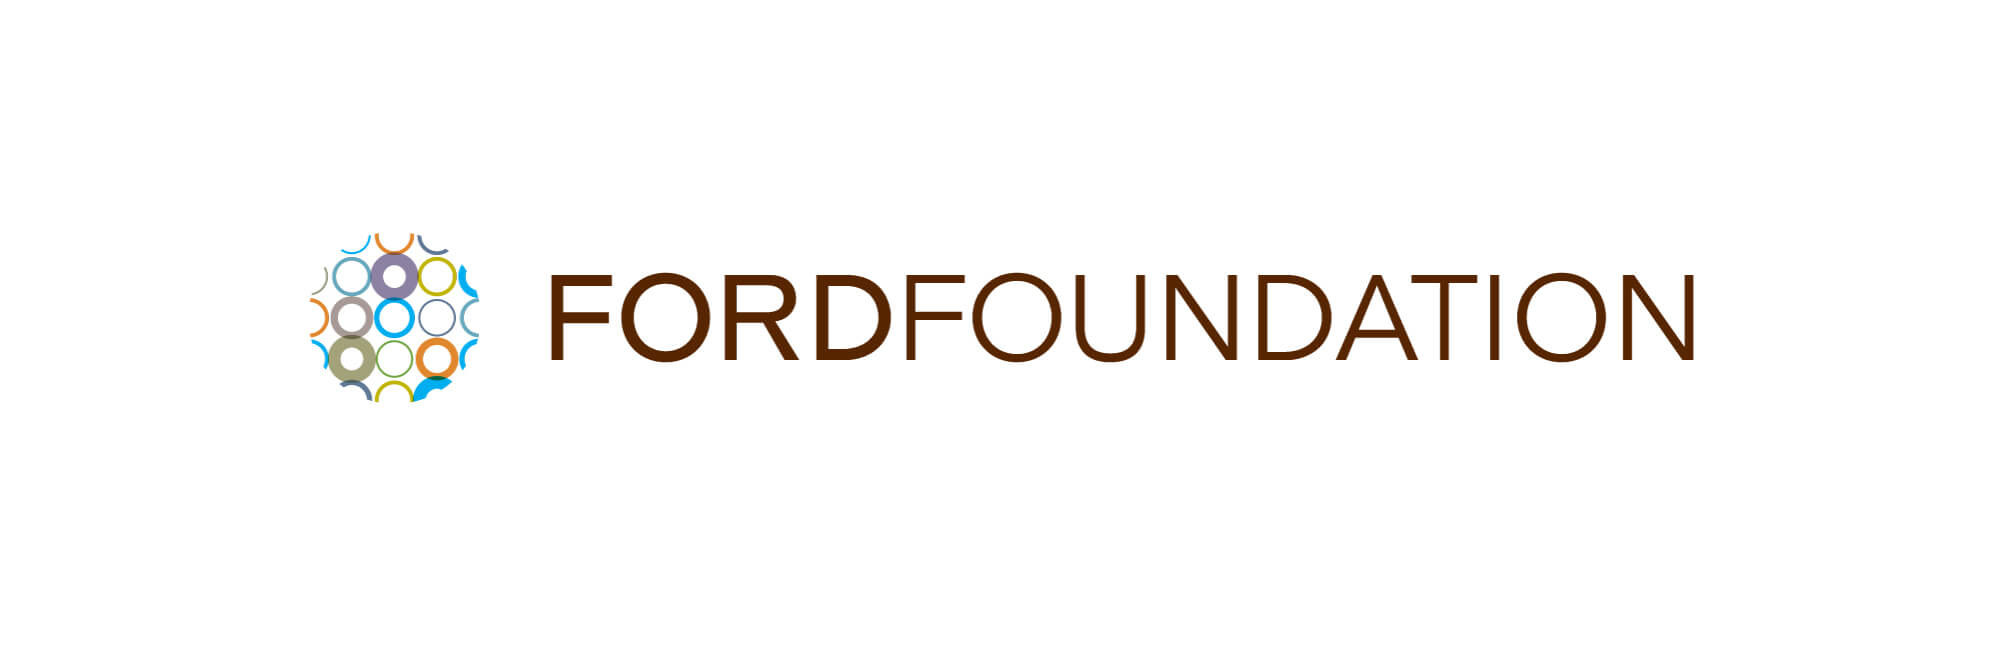 Board ford foundation #8